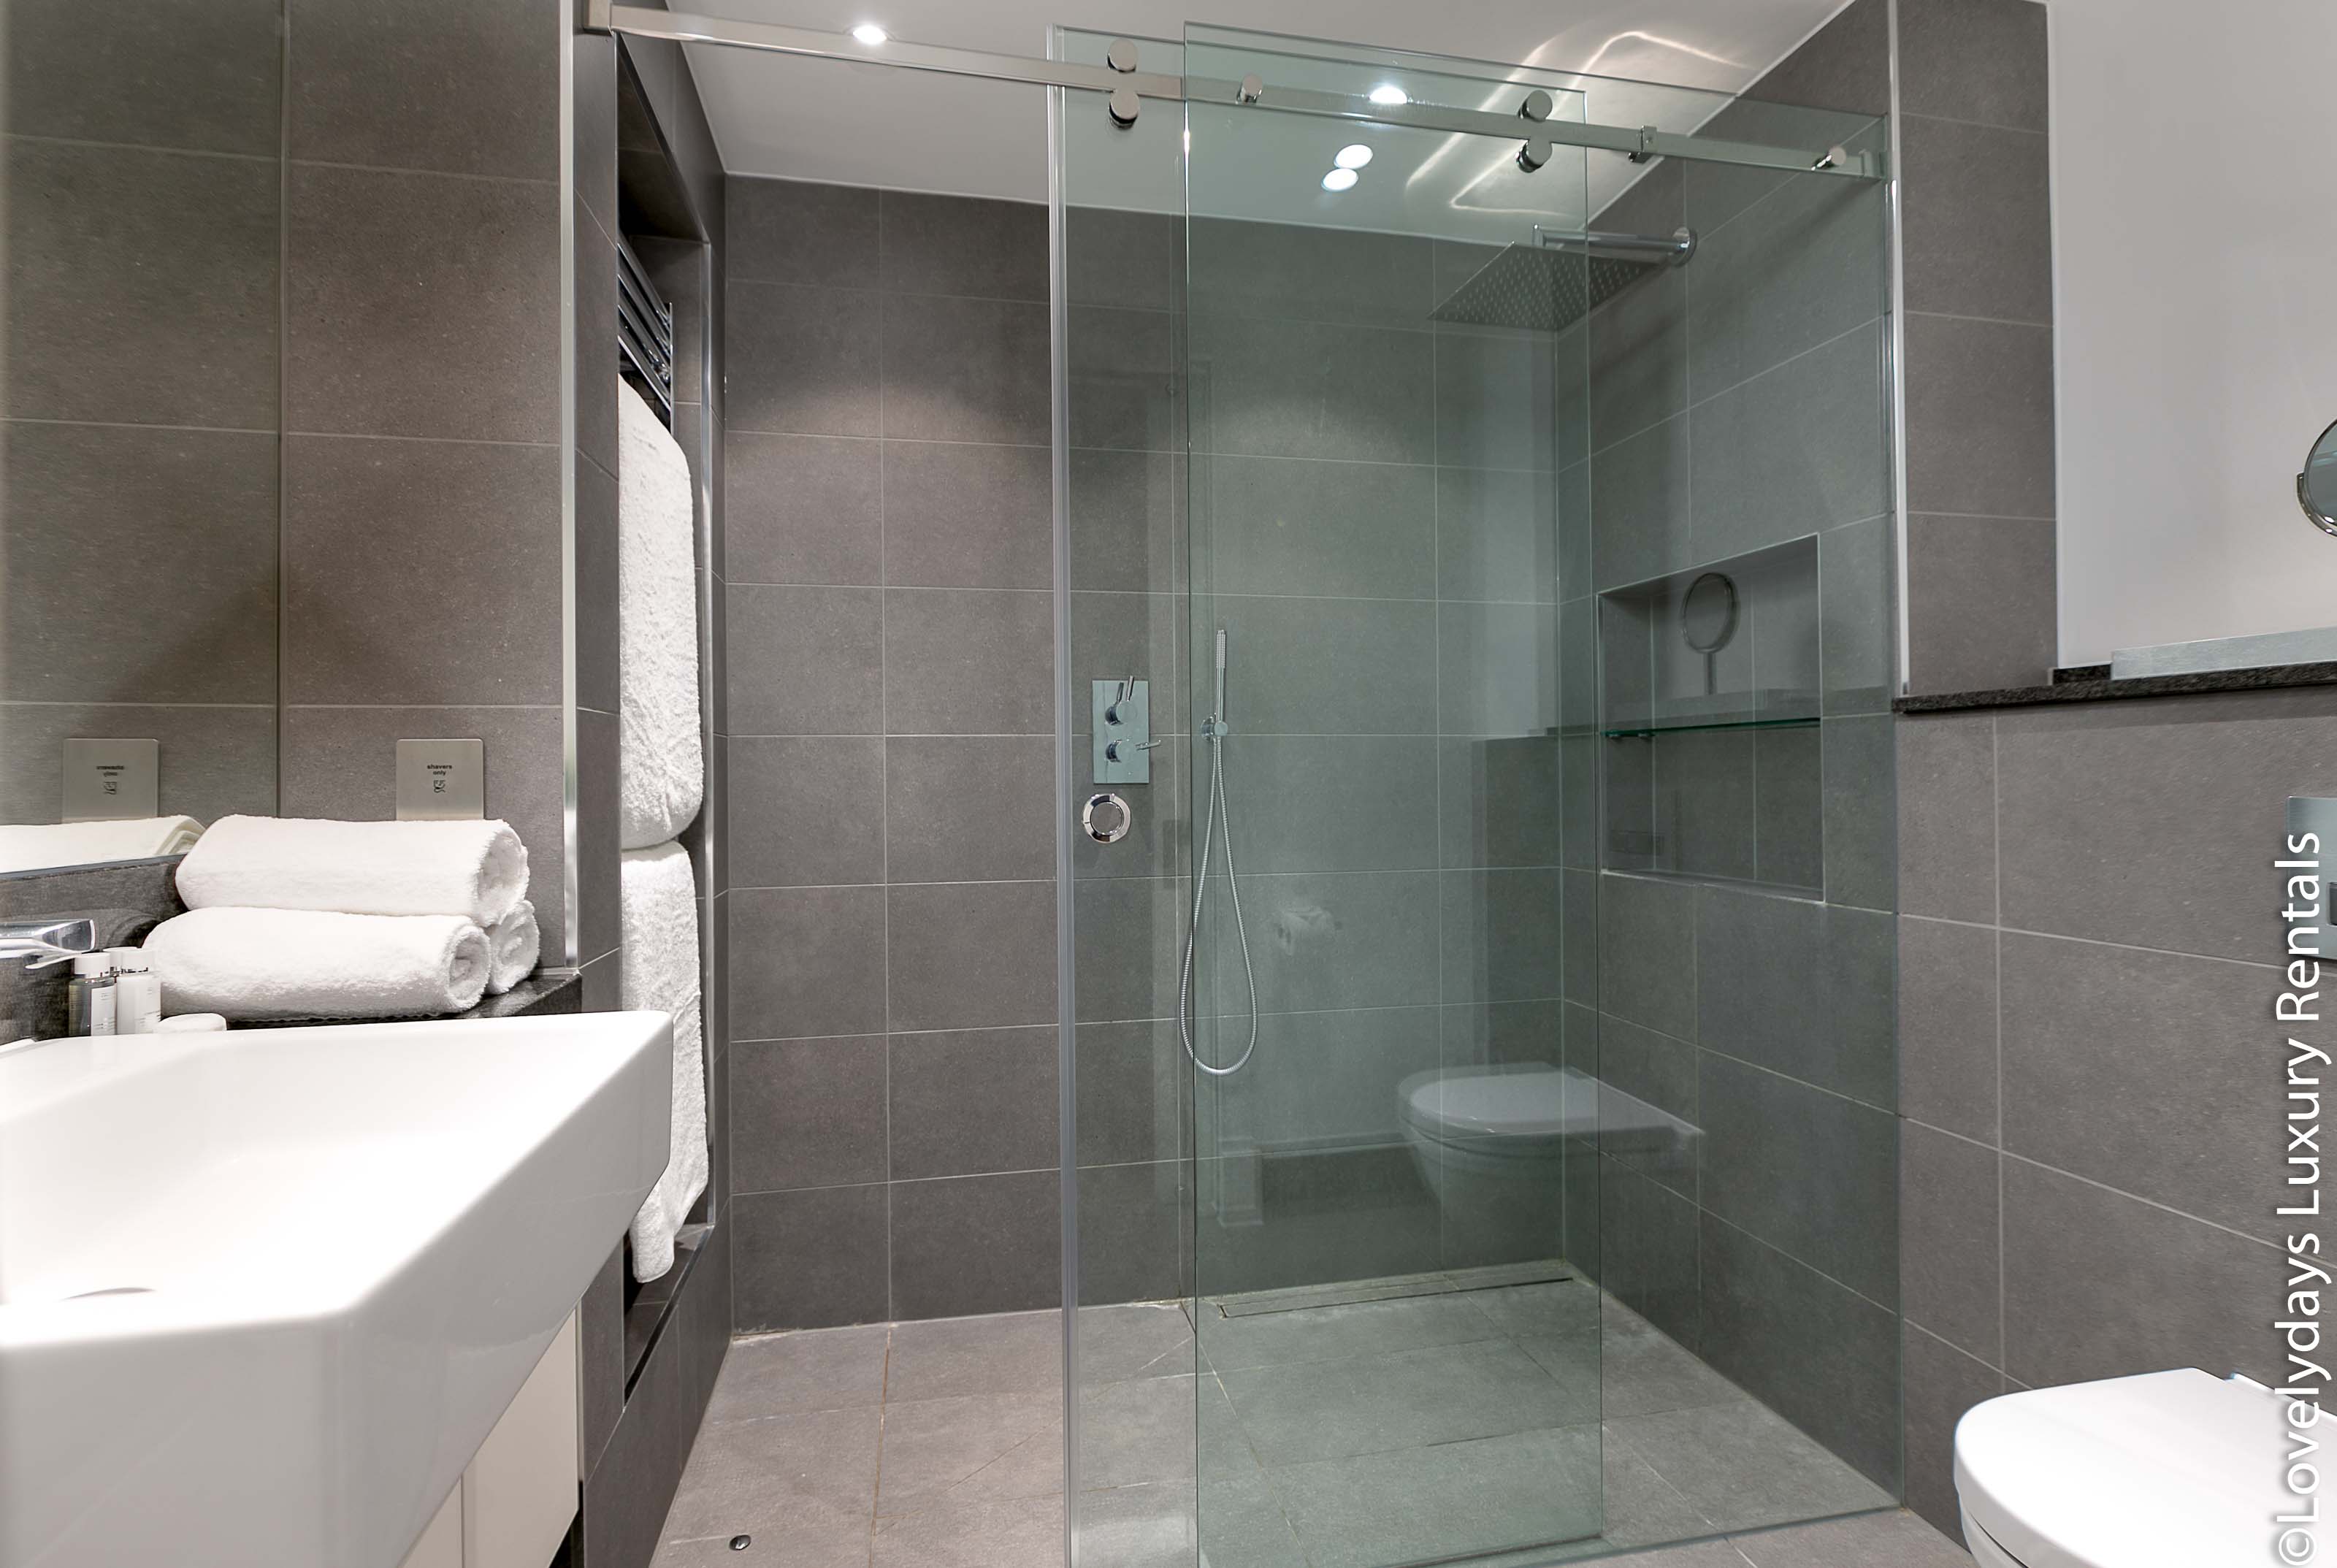 Lovelydays luxury service apartment rental - London - Covent Garden - Prince's House 603 - Lovelysuite - 2 bedrooms - 2 bathrooms - Lovely shower - 23289315da7b - Lovelydays